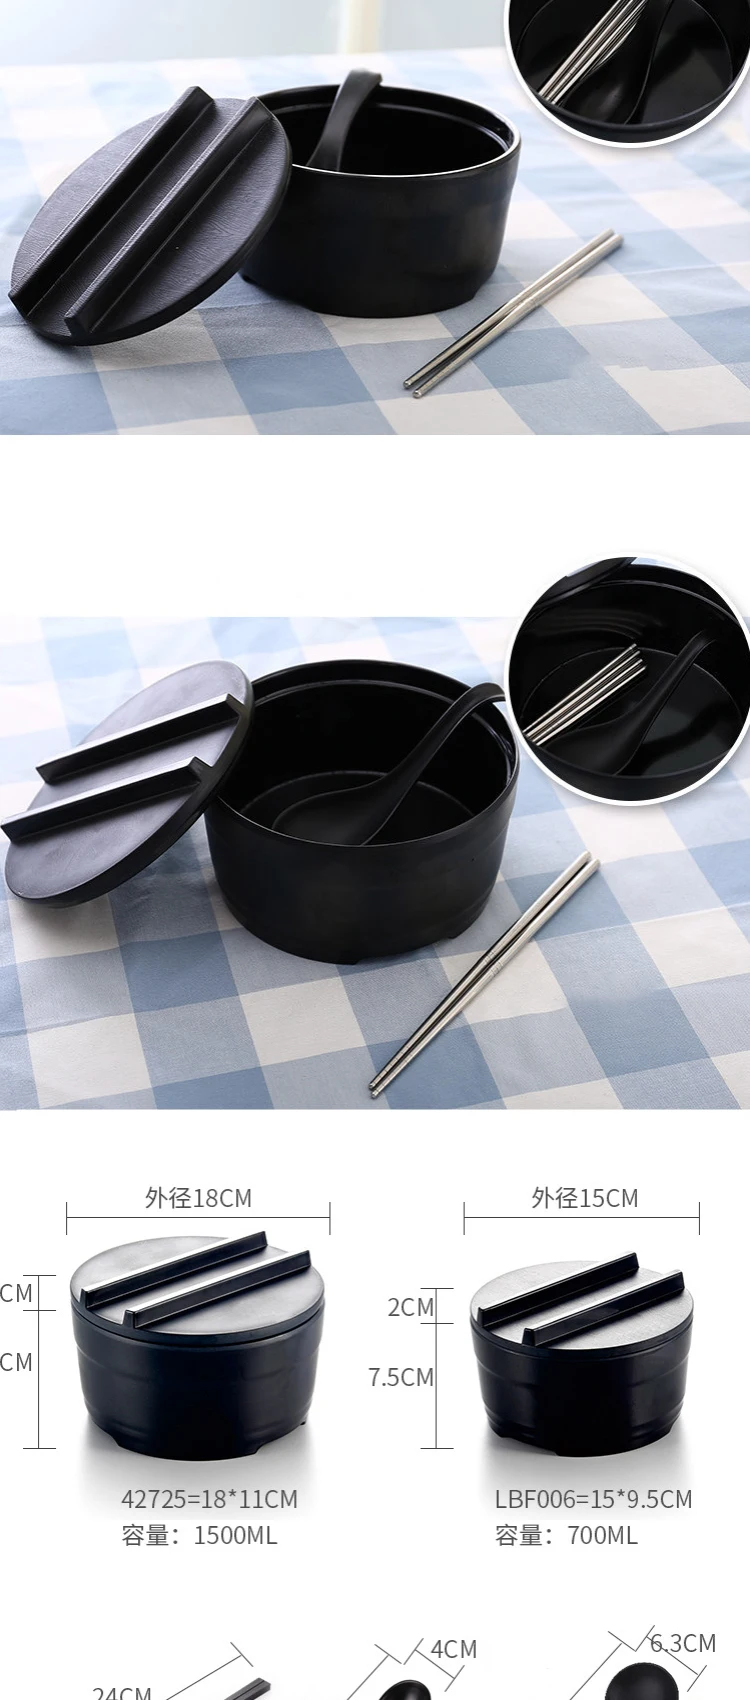 Черный матовый bo'w'l ресторан блюдо тарелка для приправы, соуса фарфоровый горячий горшок блюдце пластиковая посуда японское корейское блюдо